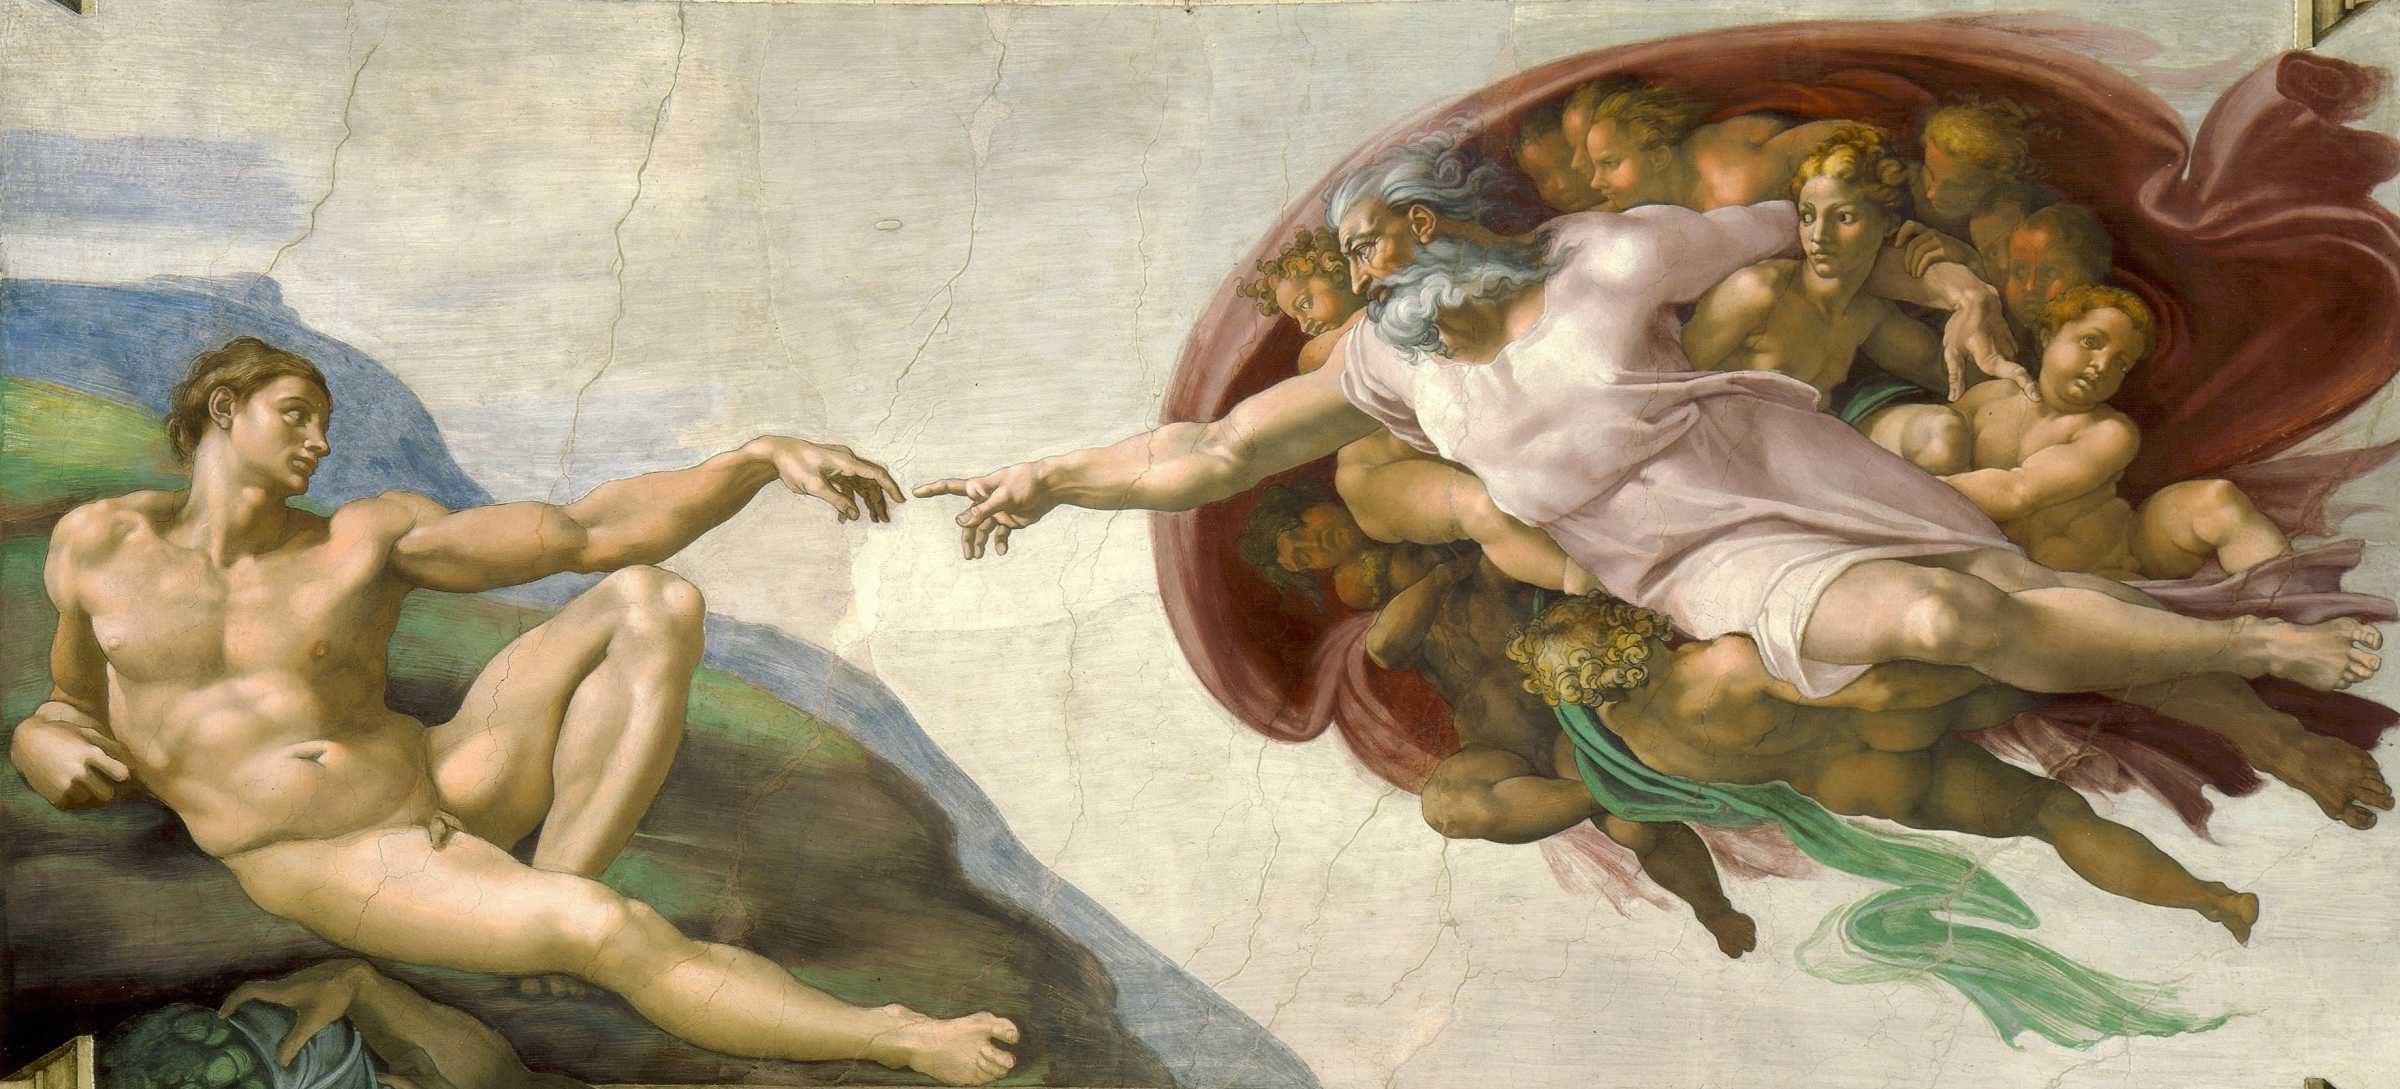 La Création d'Adam est une fresque de l'artiste italien Michelangelo, qui fait partie du plafond de la Chapelle Sixtine.